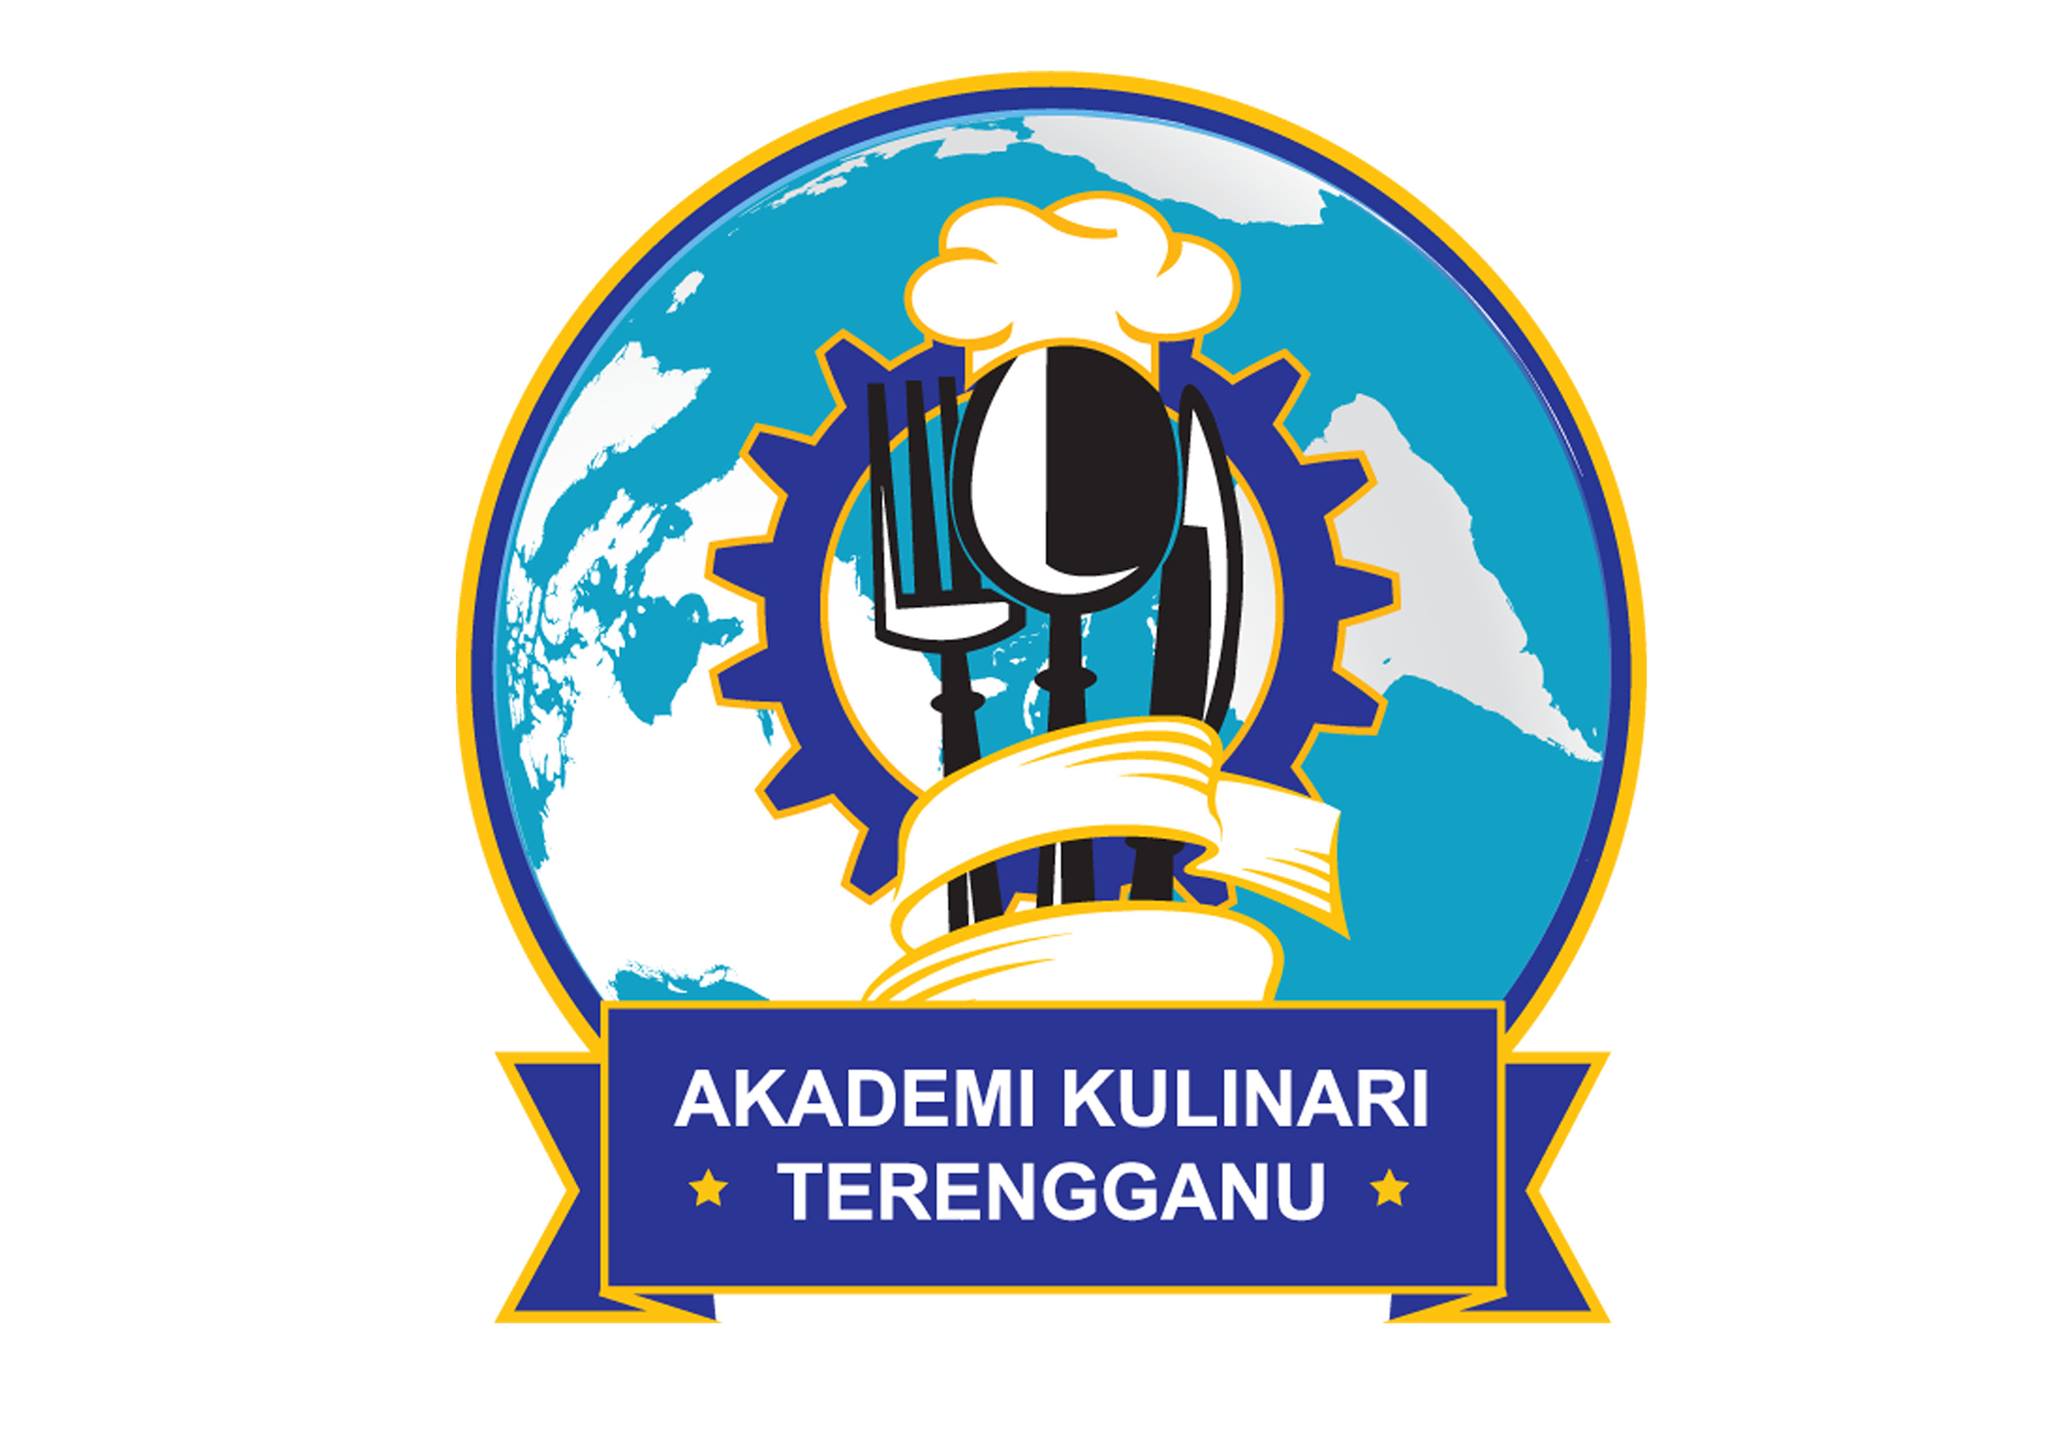 Akademi Kulinari Terengganu Logo